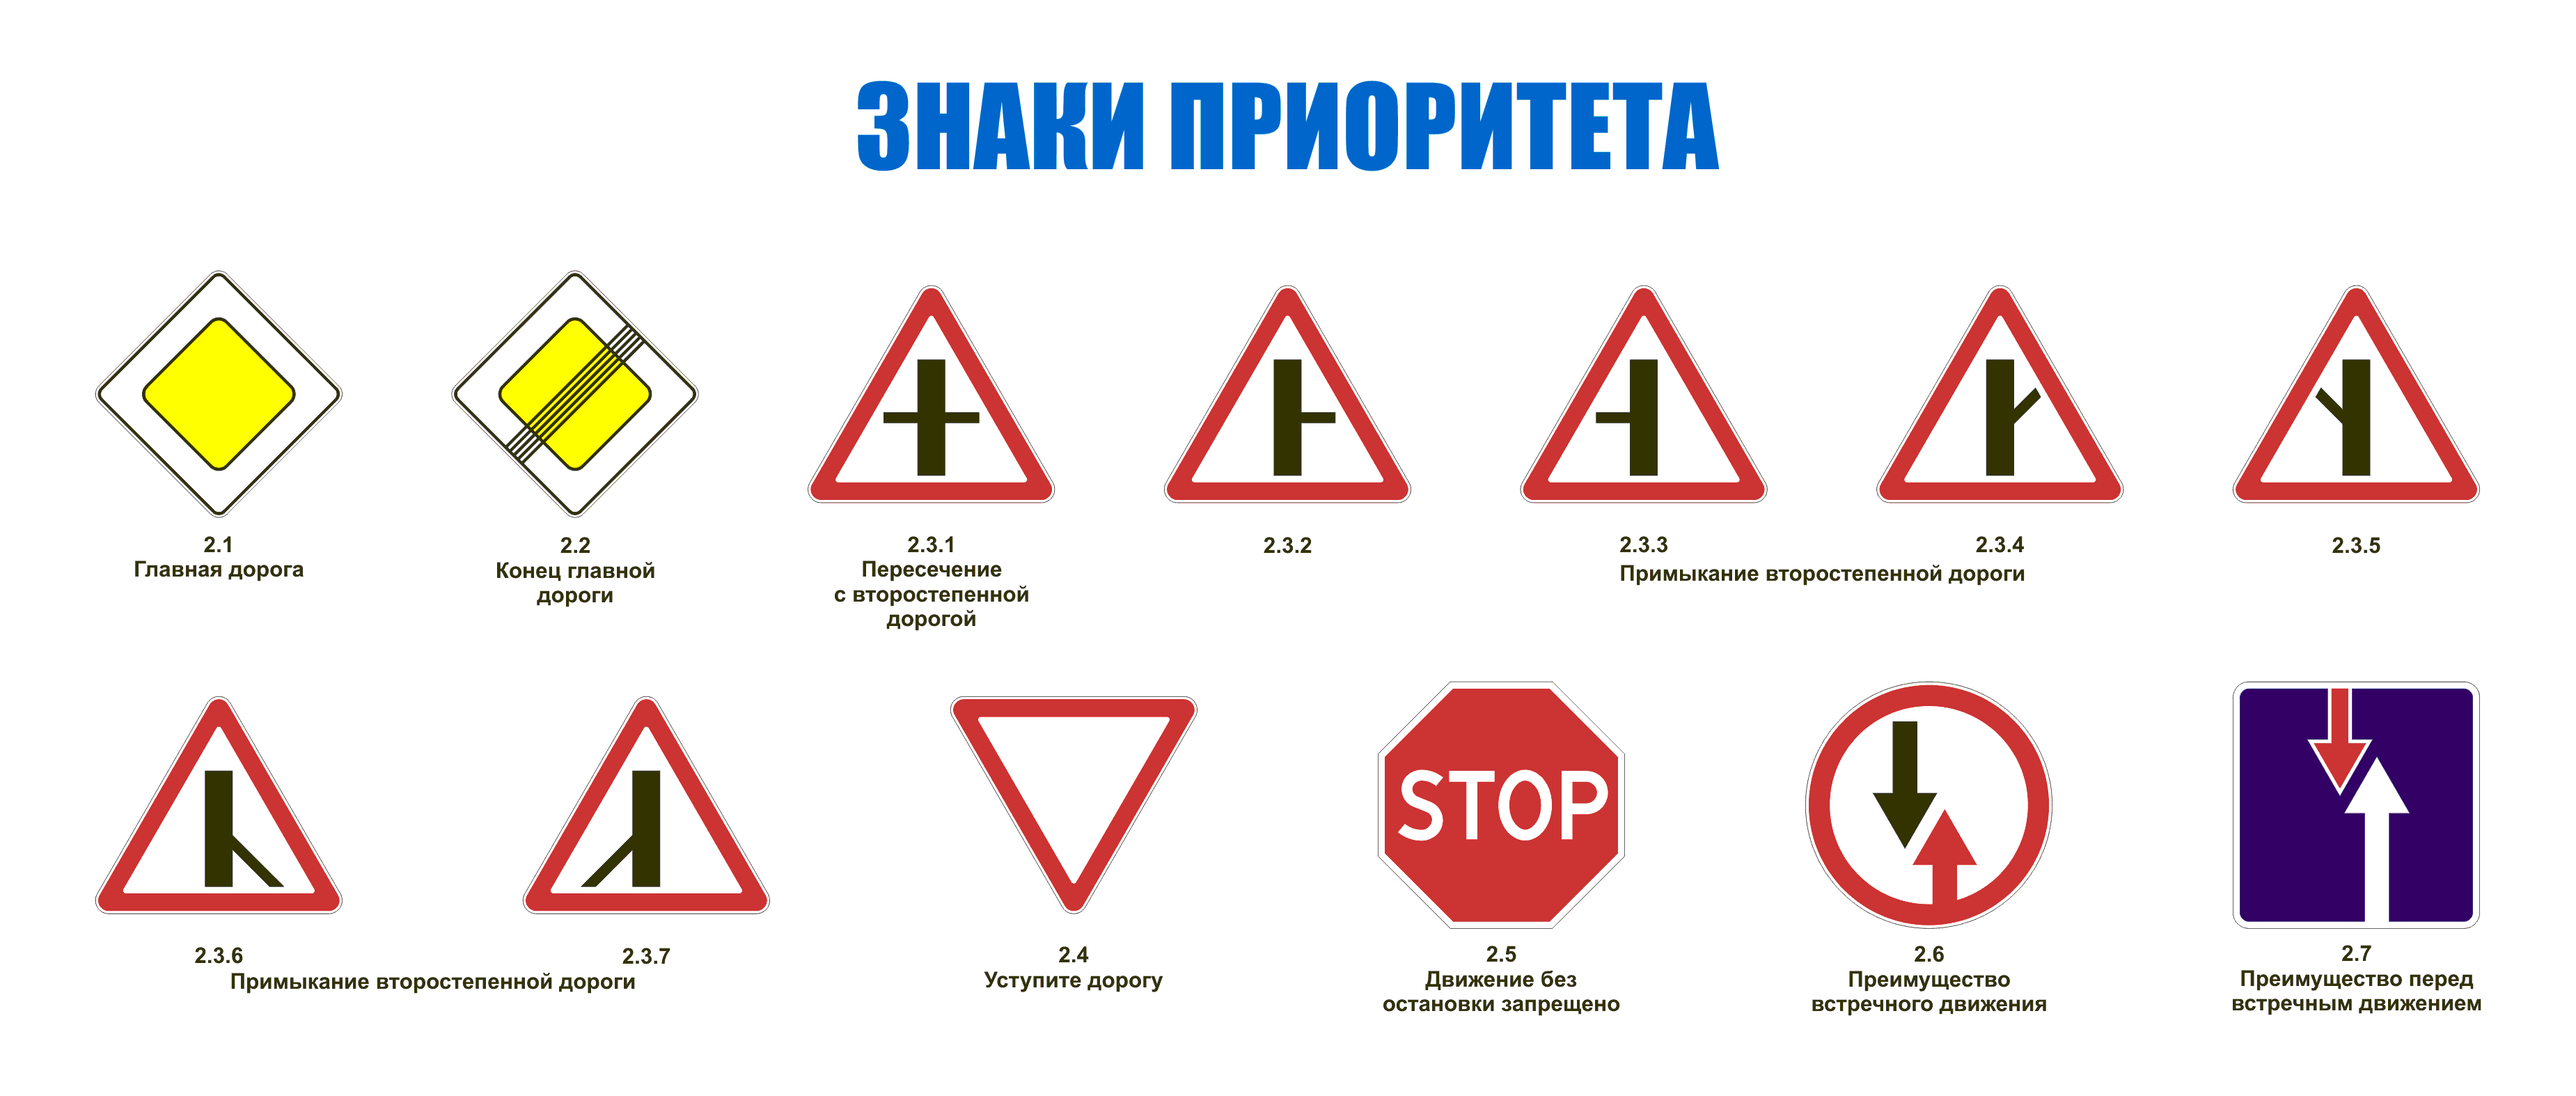 Основные группы дорожных знаков и их предназначение